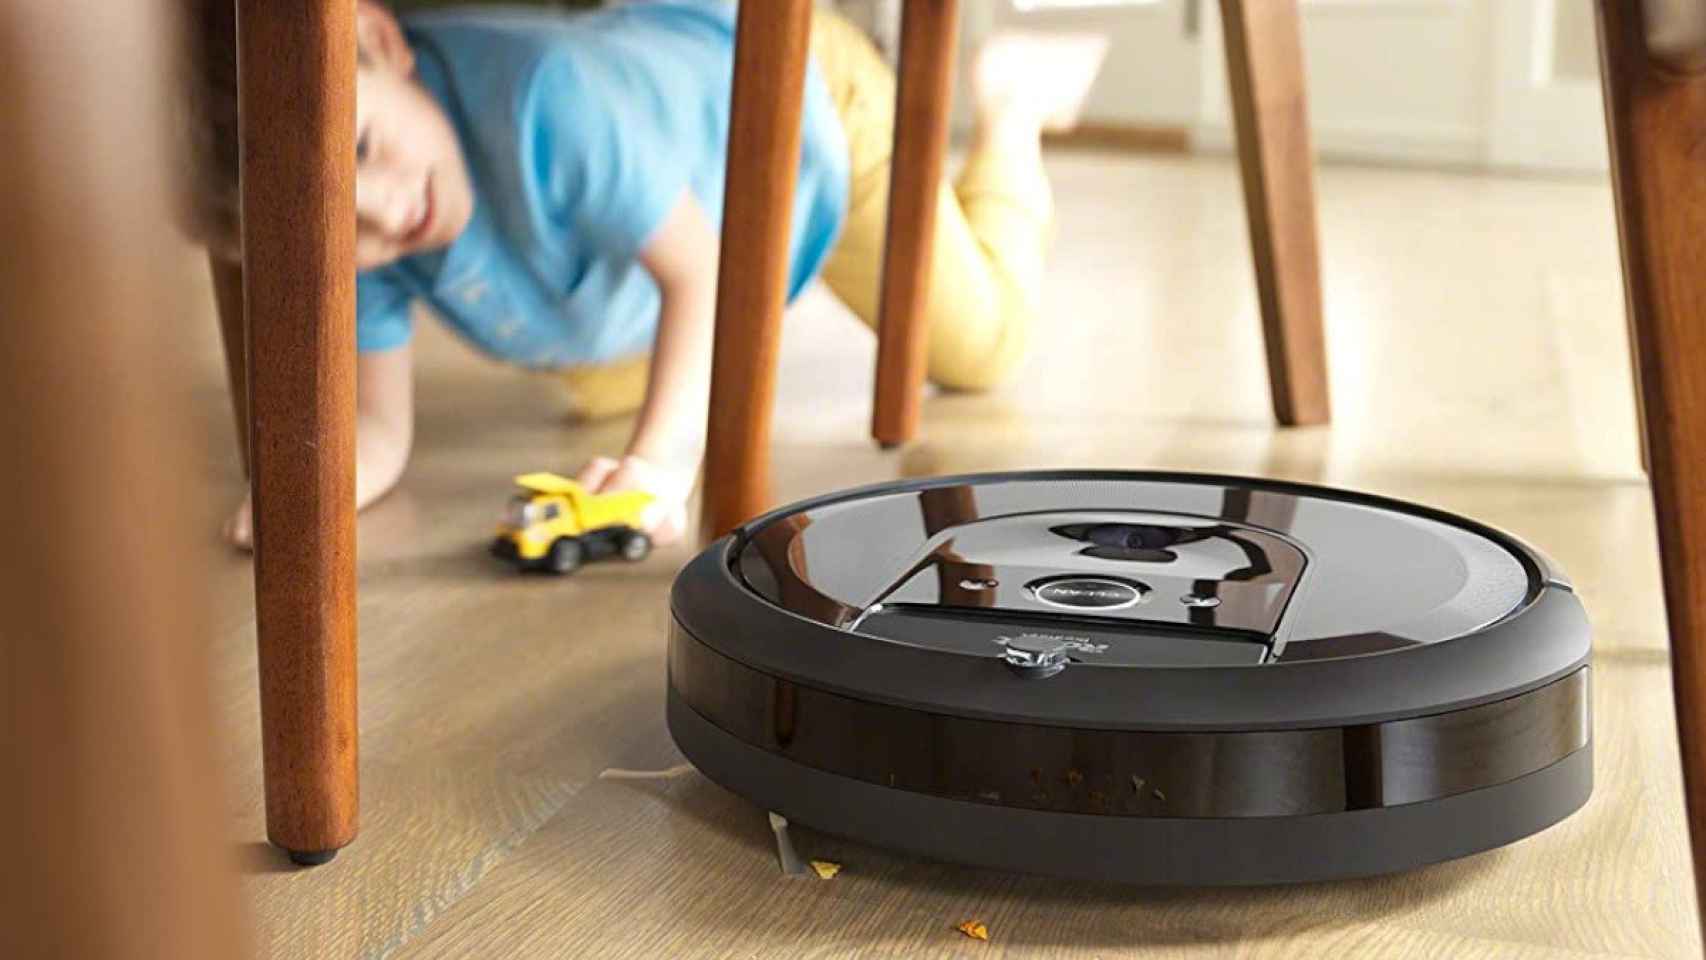 Potencia premium y tanque de autovaciado: este robot aspirador Roomba es  una bestia a precio mínimo